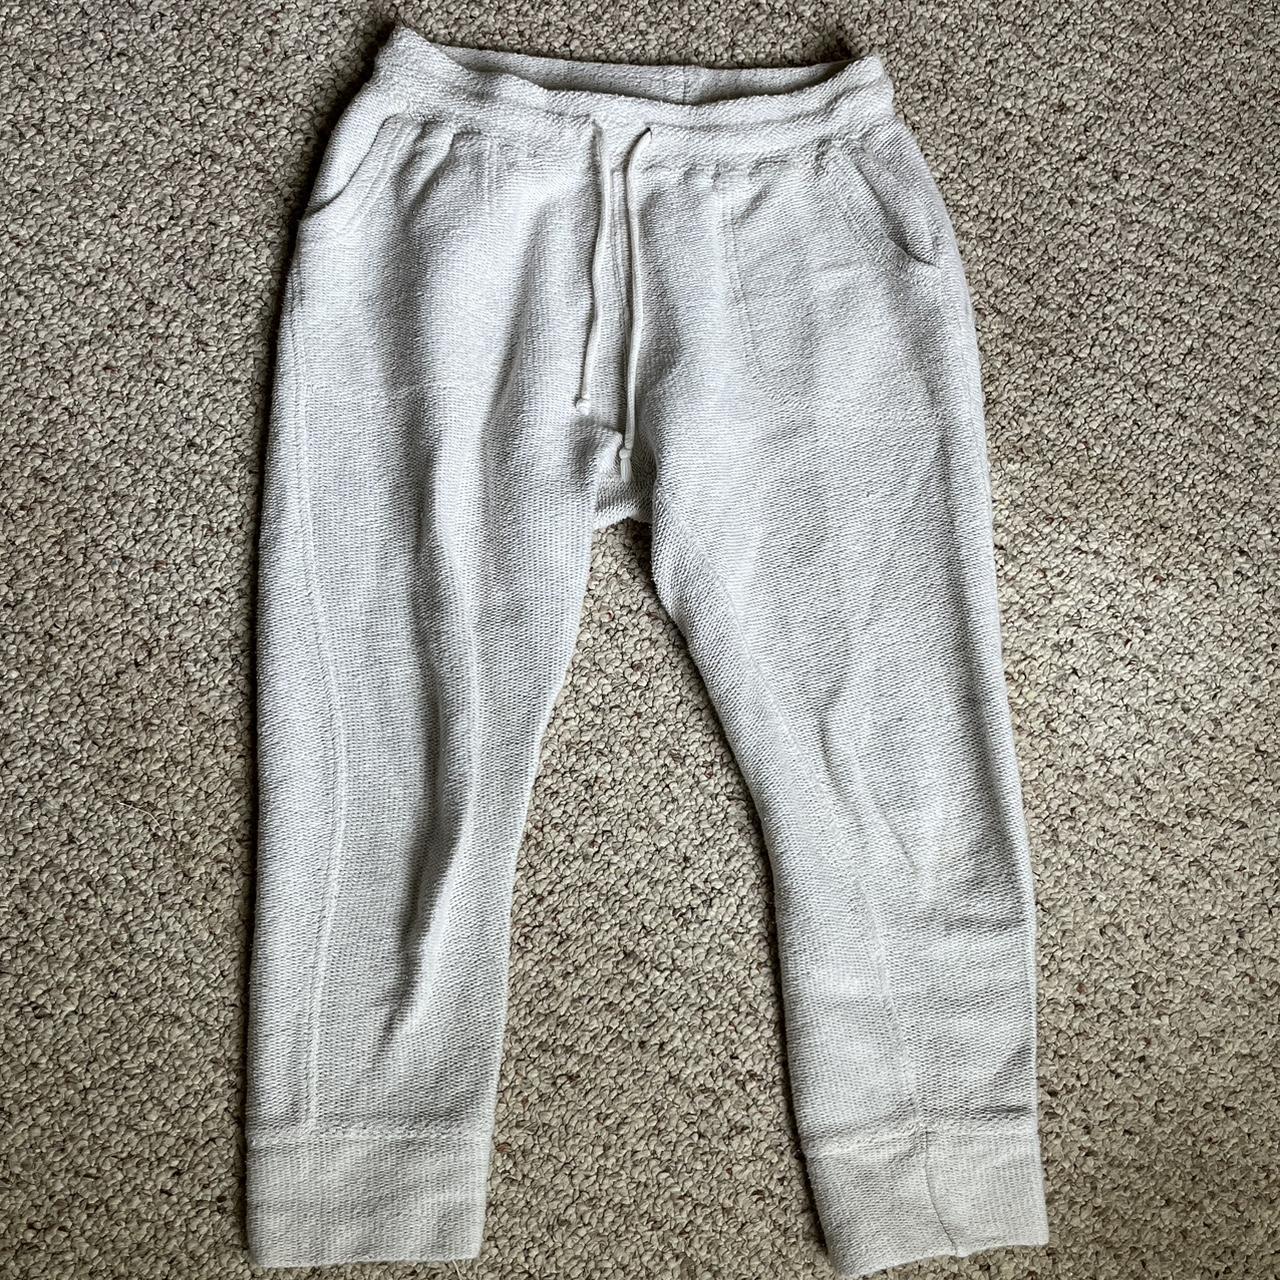 Free People Cropped Sweatpants - Good used... - Depop